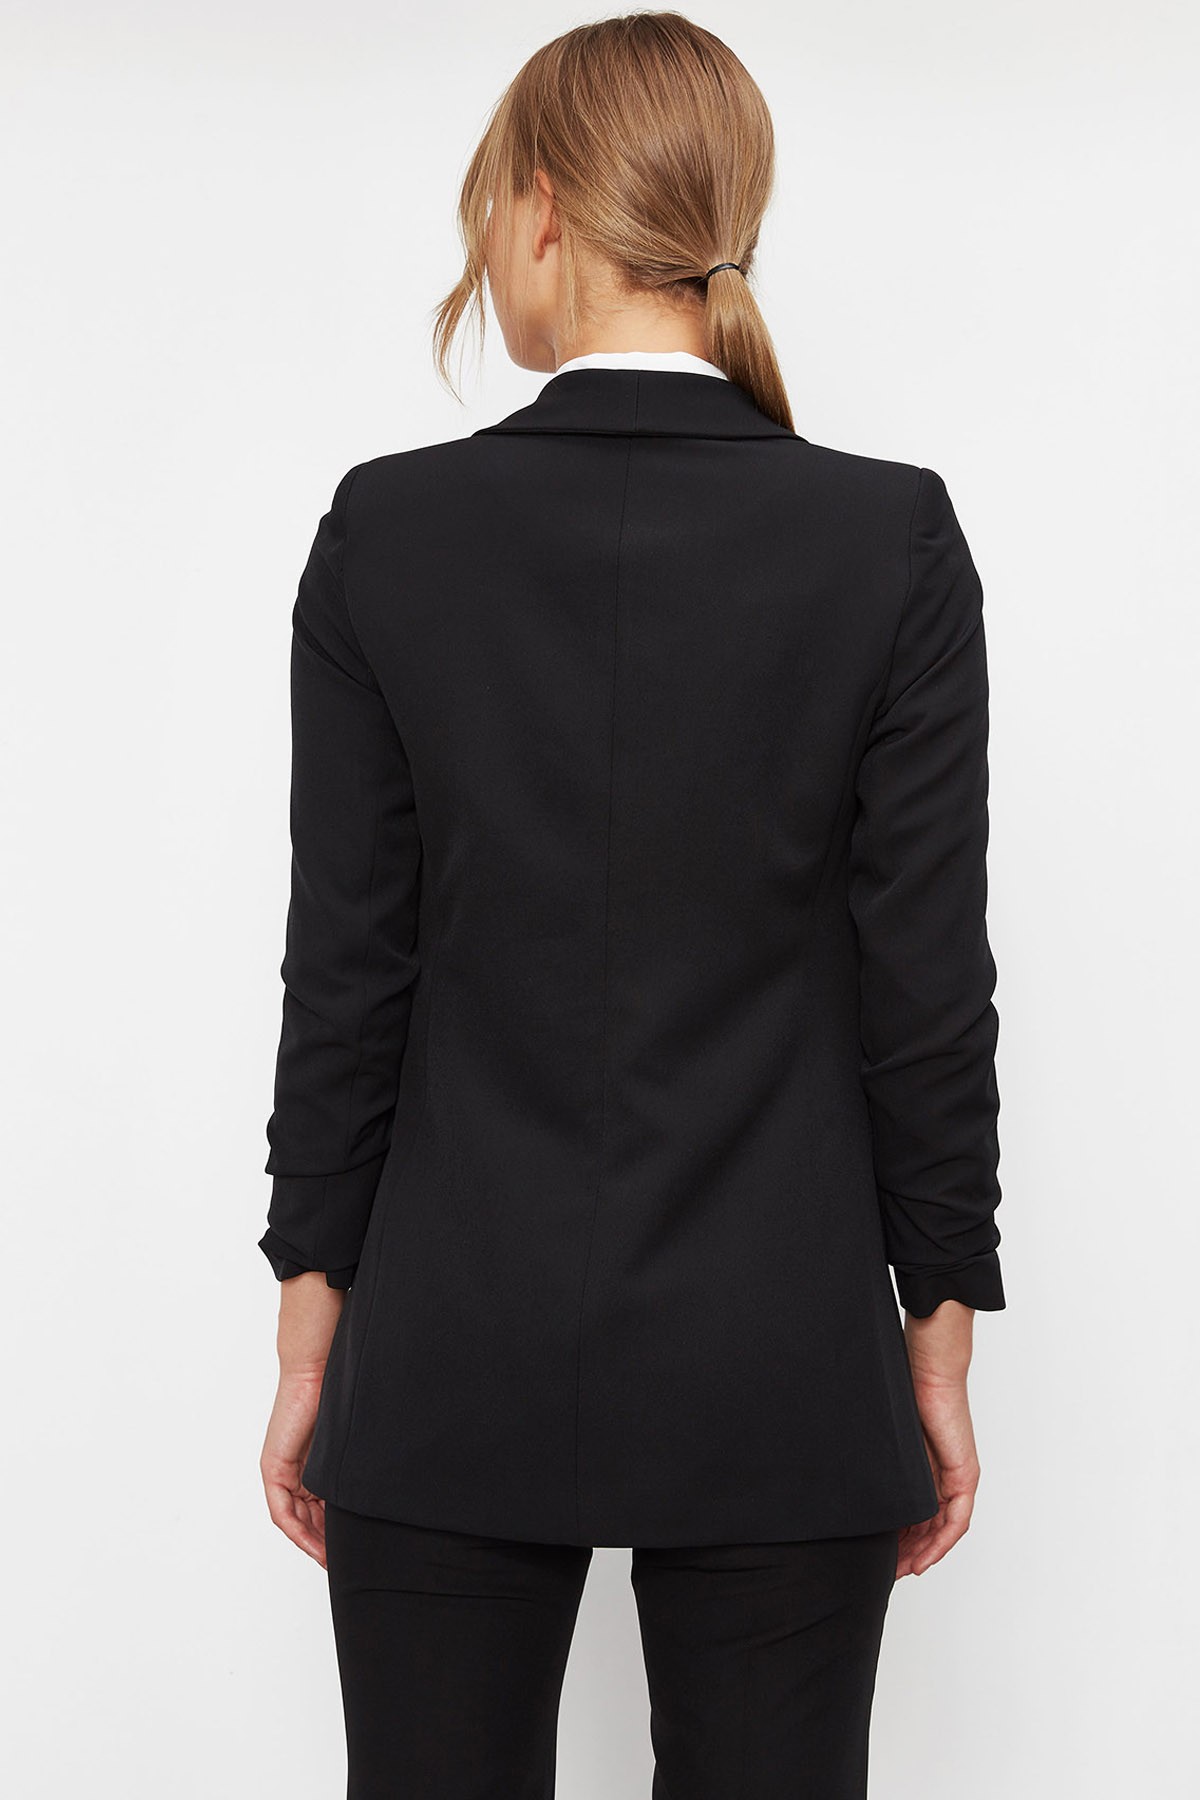 Kadın Blazer Ceket - Siyah